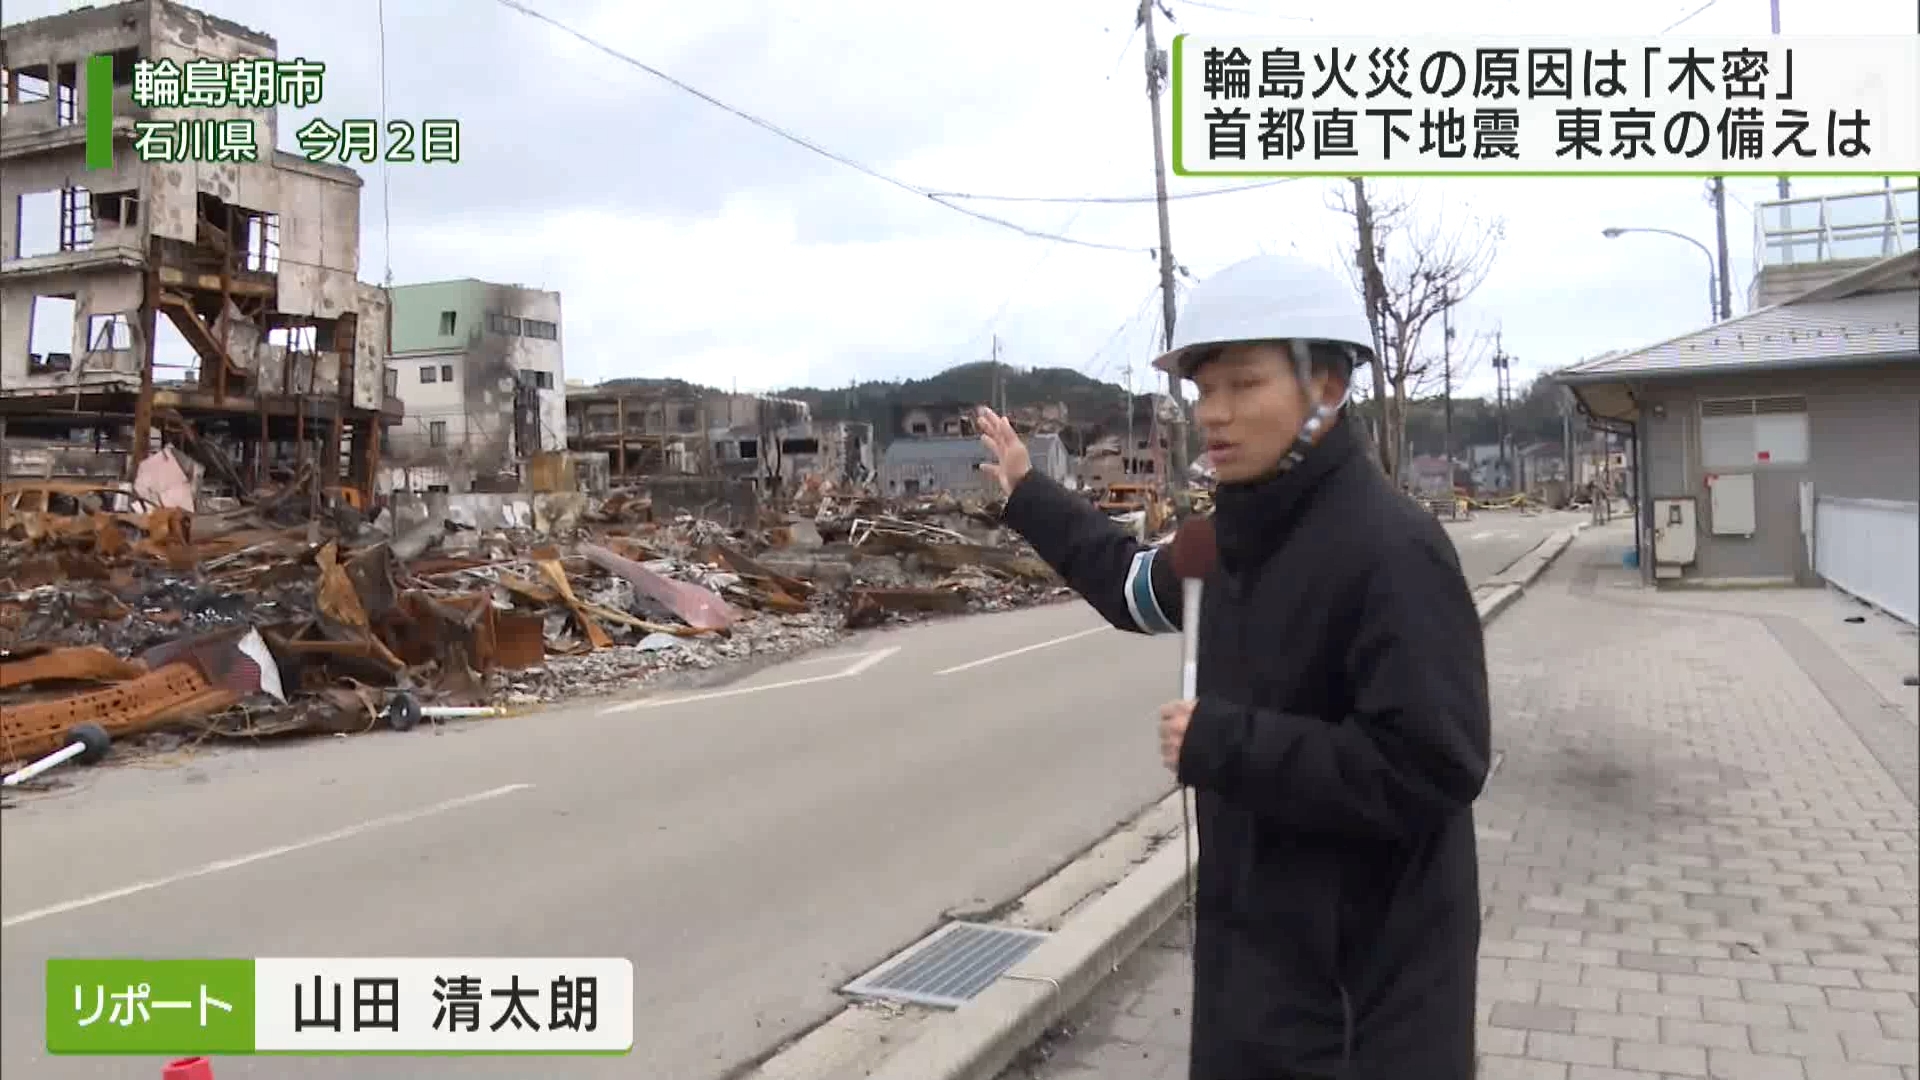 元日に石川県などを襲った能登半島地震。輪島市で起きた大規模火災の出火原因が「電気火災」とみられることが、新たに分かりました。こうした地震火災について専門家は、「東京ではさらに大規模な火災が起きる可能性がある」と警鐘を鳴らしています。